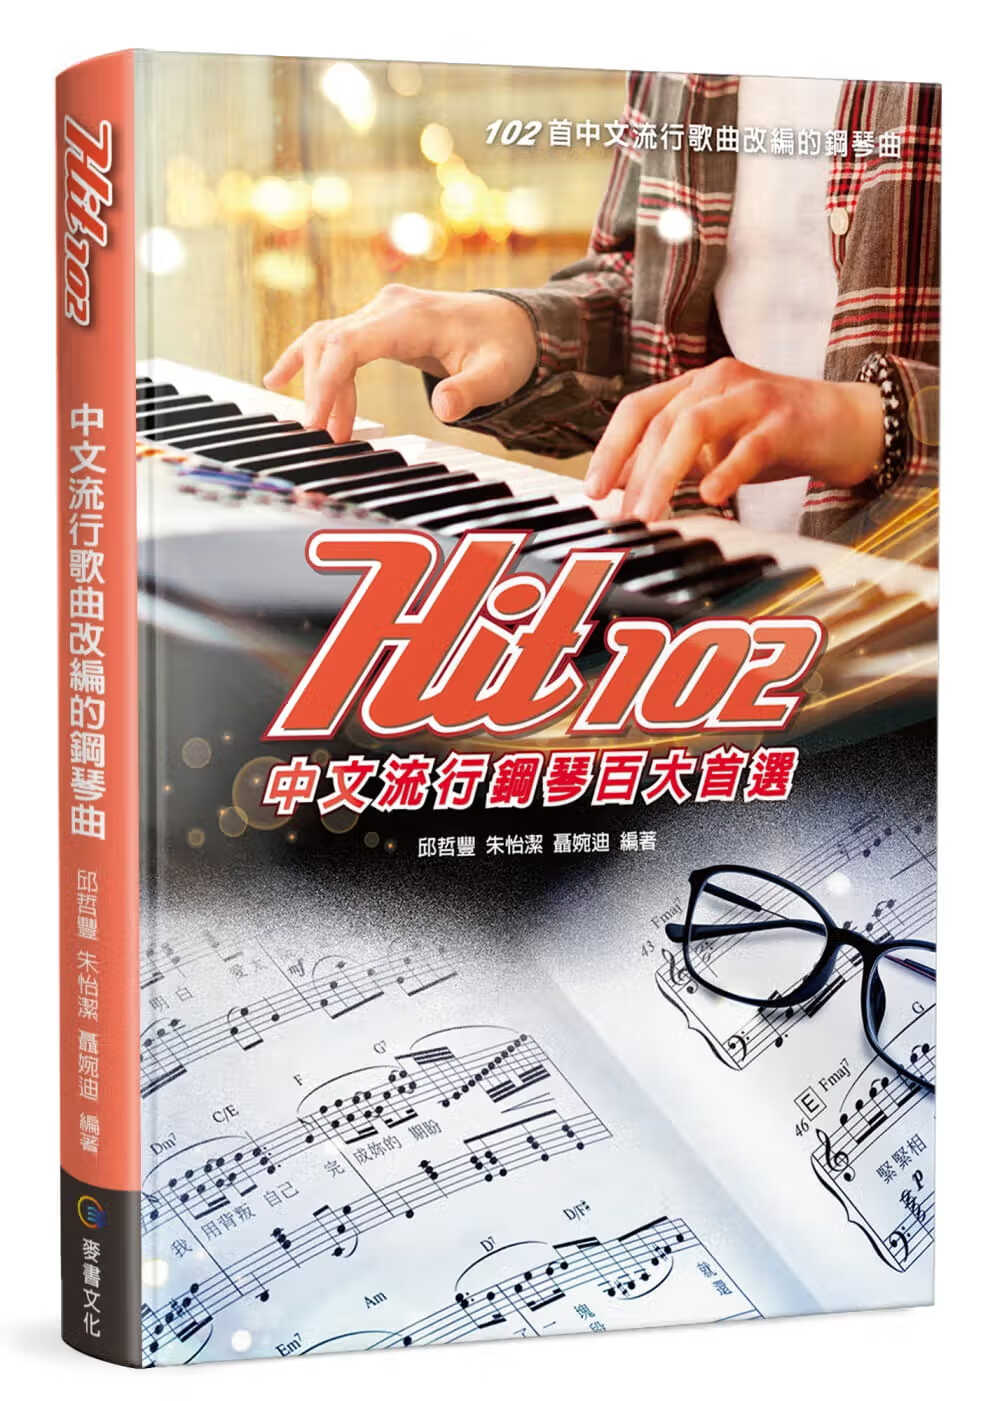 预售 原版进口书 邱哲丰Hit102流行钢琴百大麦书